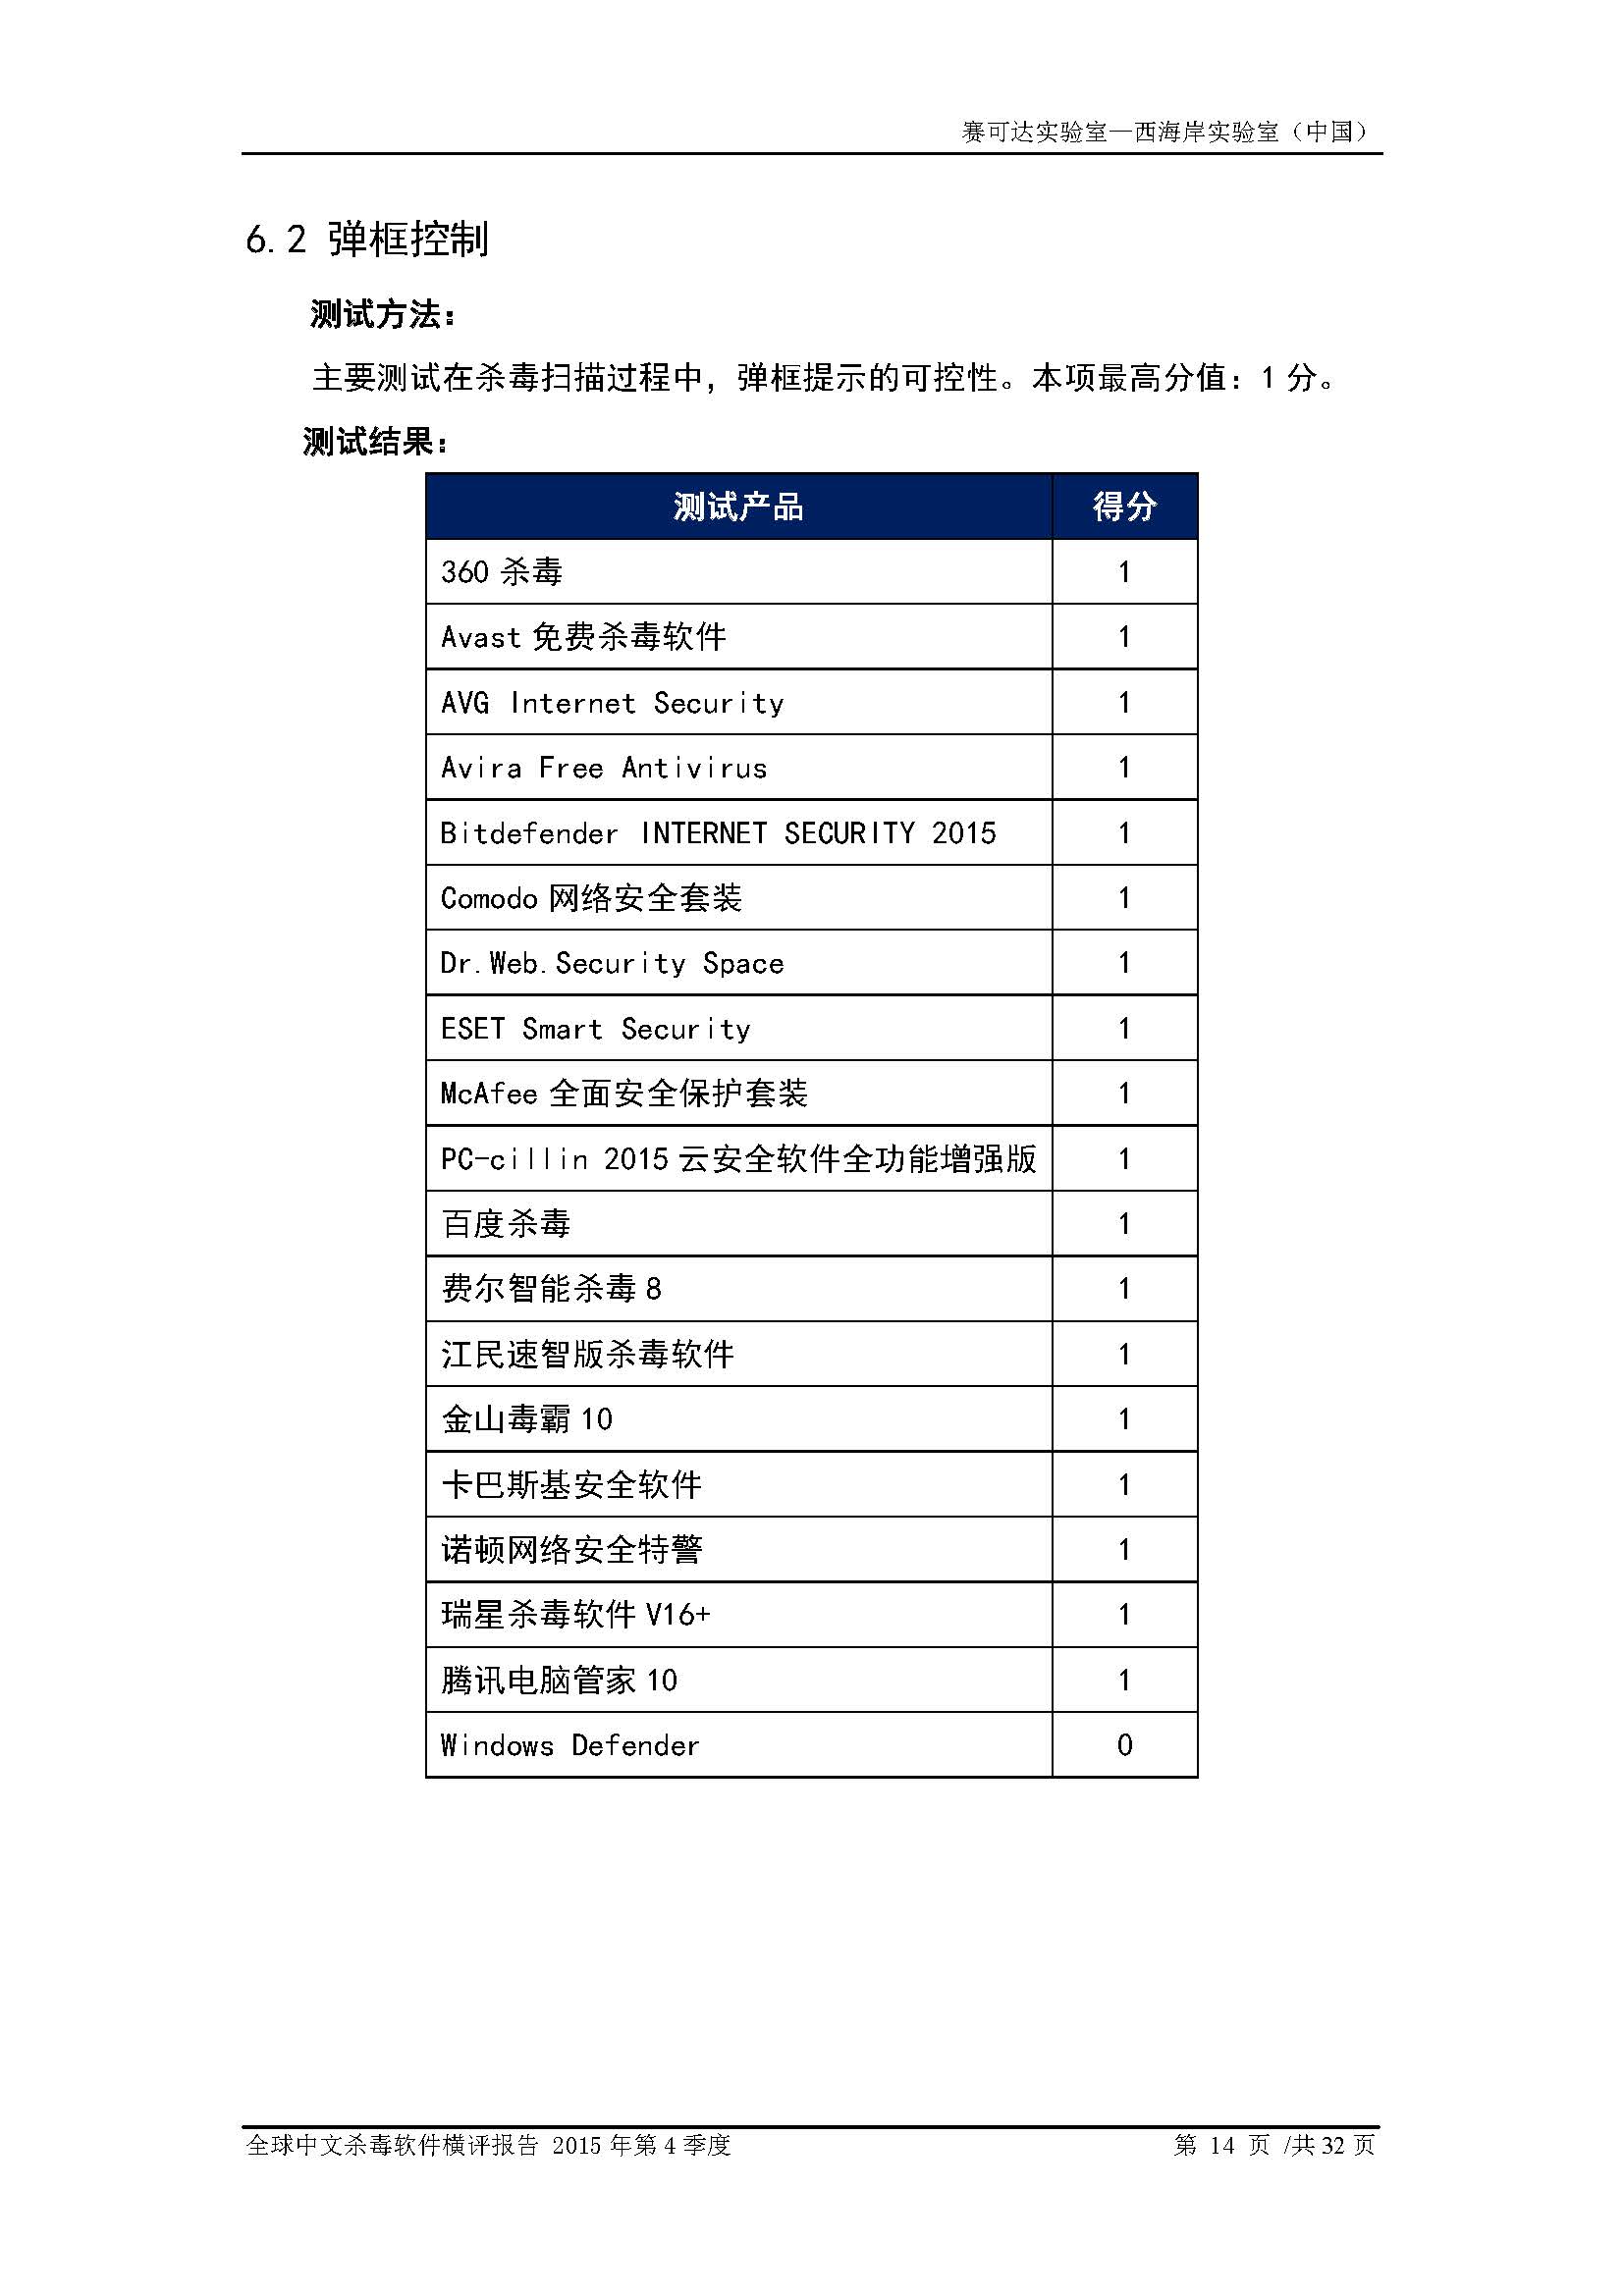 中文PC杀毒软件横评测试报告- Windows 8.1【中文版】.pdf (_Page_16.jpg